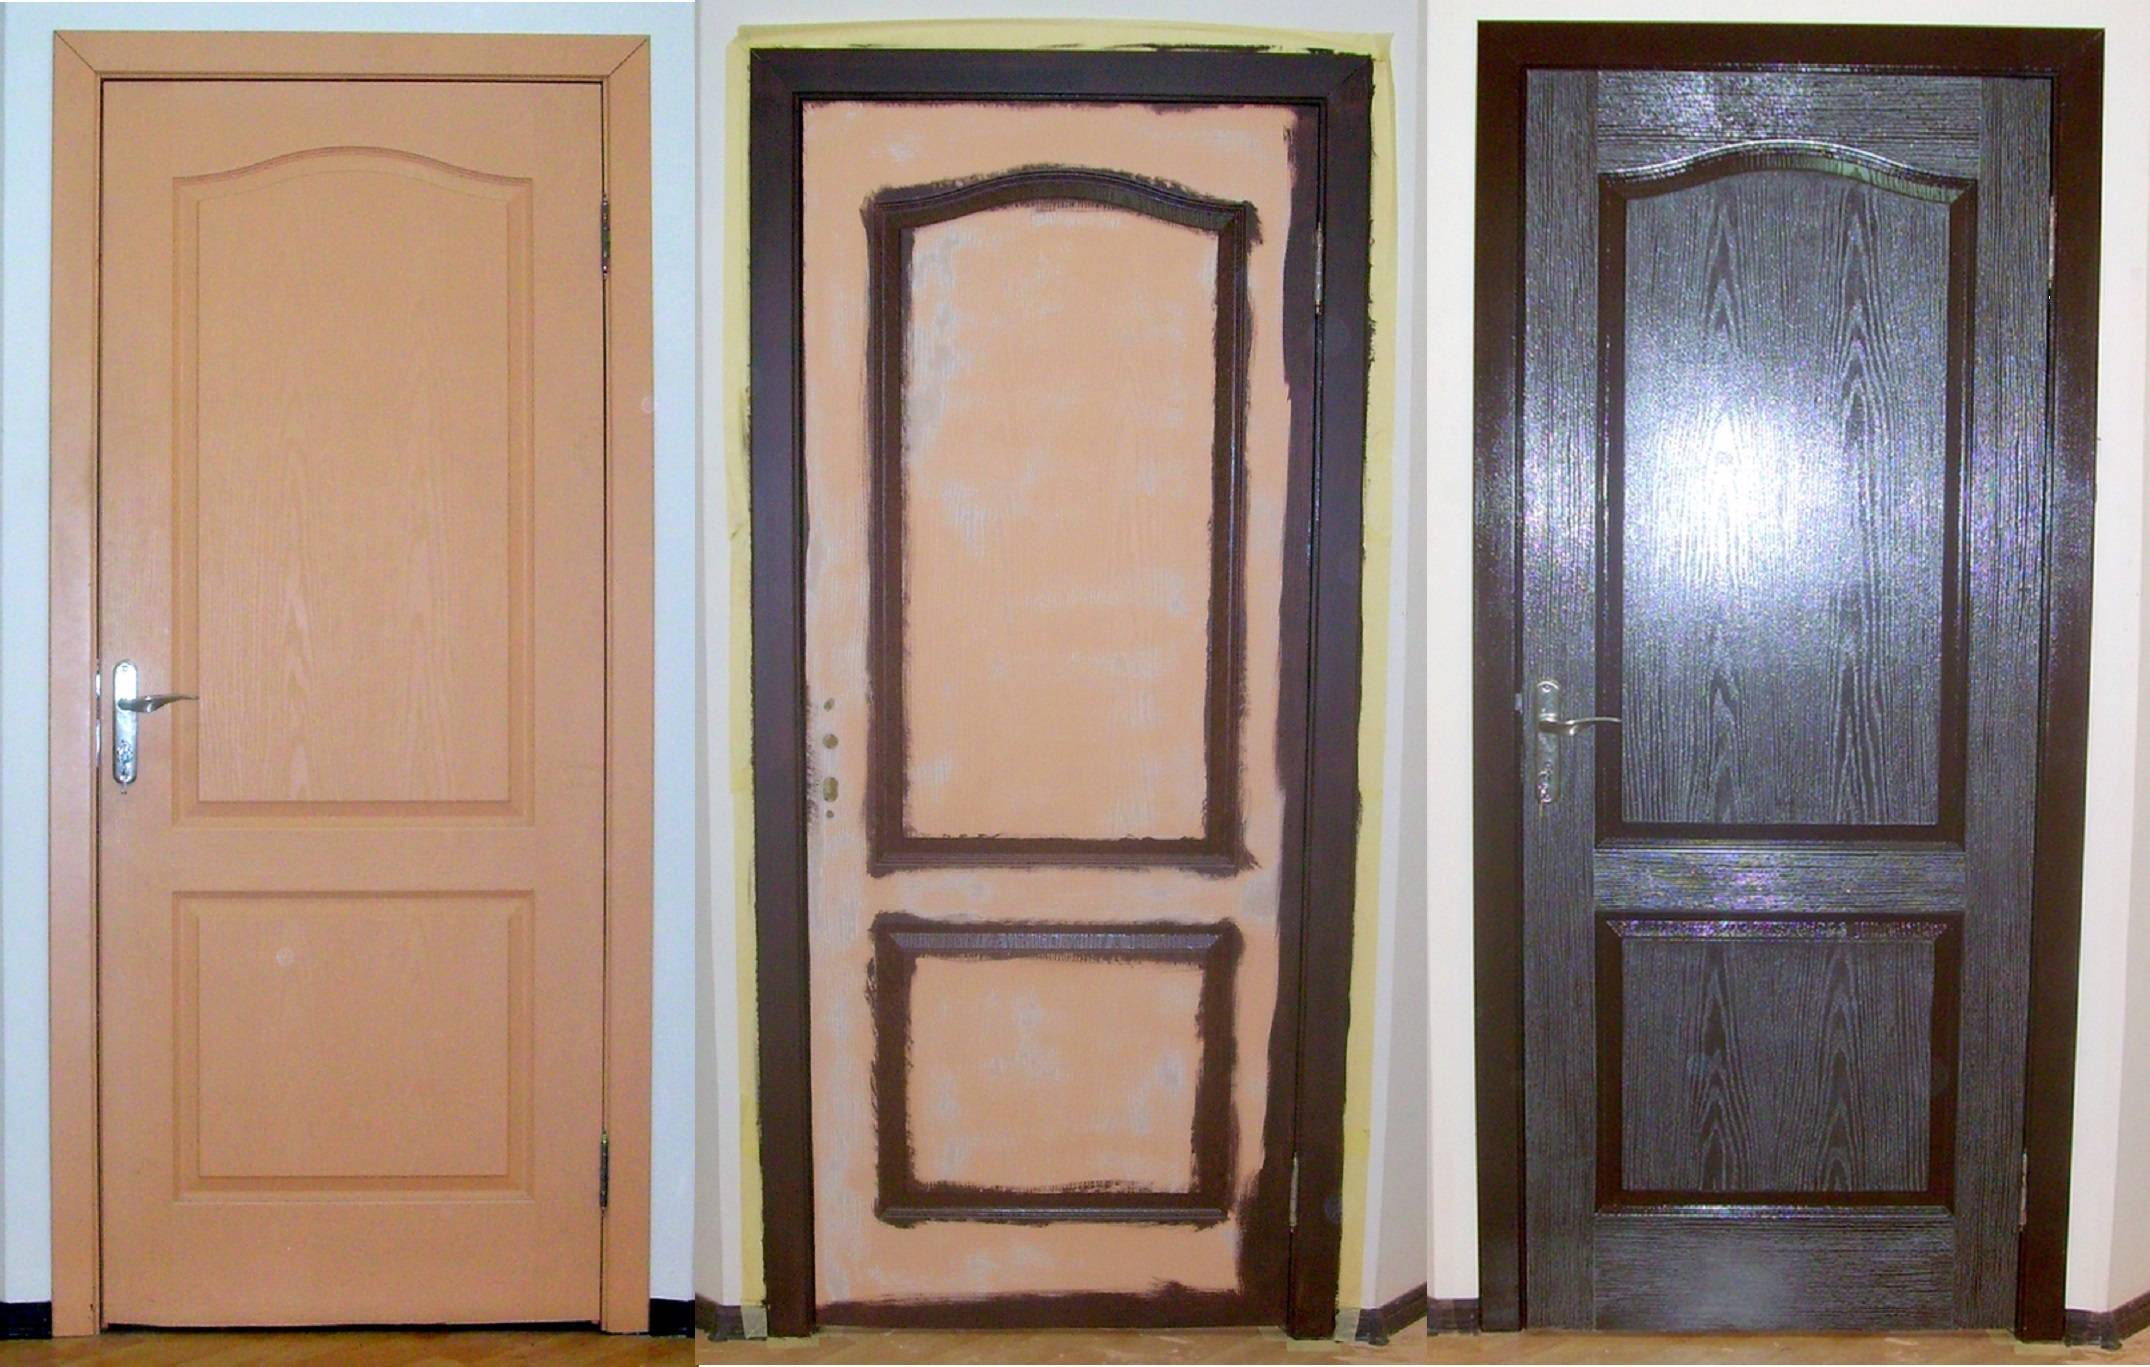 Как отреставрировать старую межкомнатную дверь своими руками в домашних условиях - видео инструкция